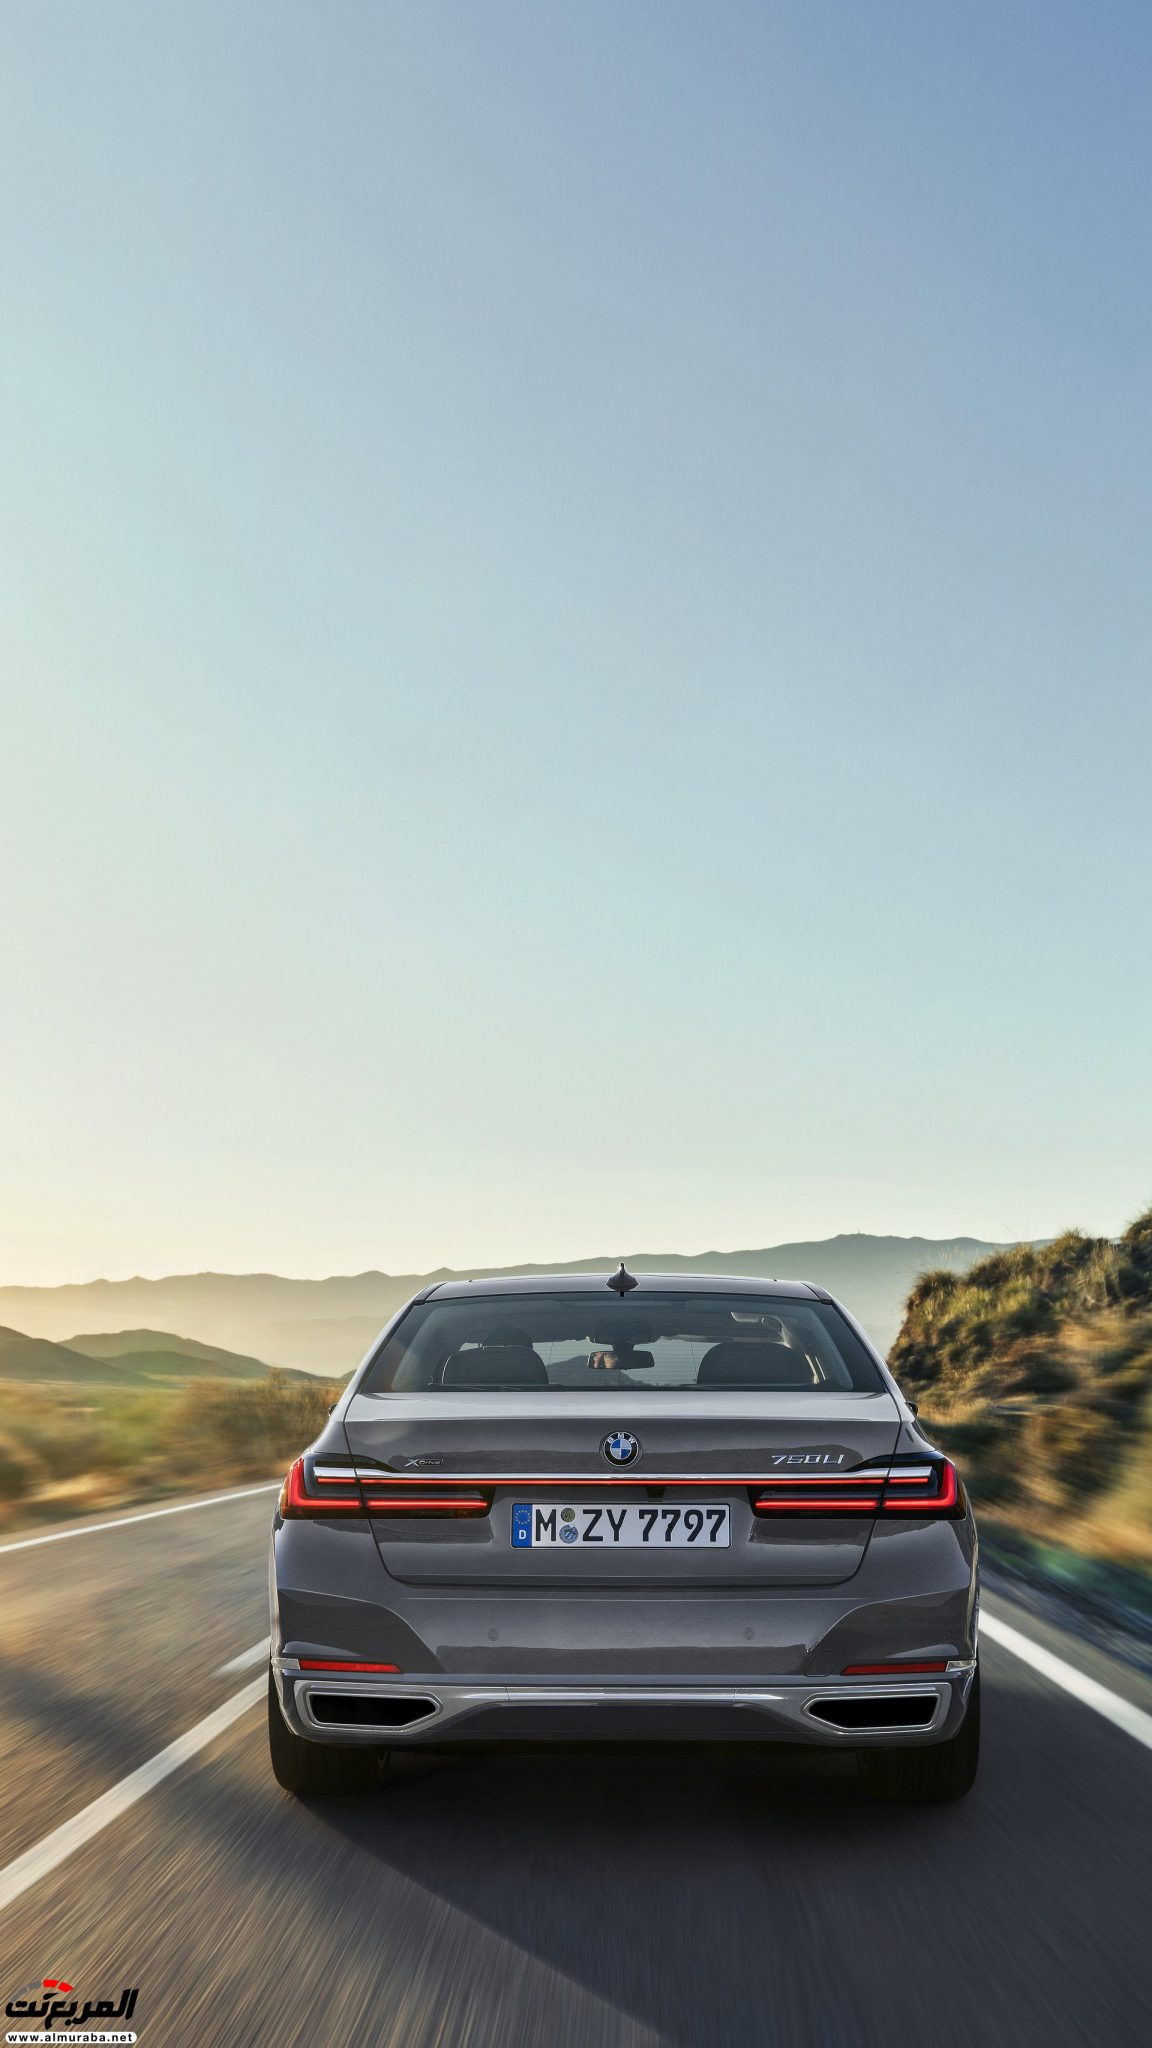 بي ام دبليو الفئة السابعة 2020 المحدثة تكشف نفسها رسمياً "صور ومواصفات" BMW 7 Series 300